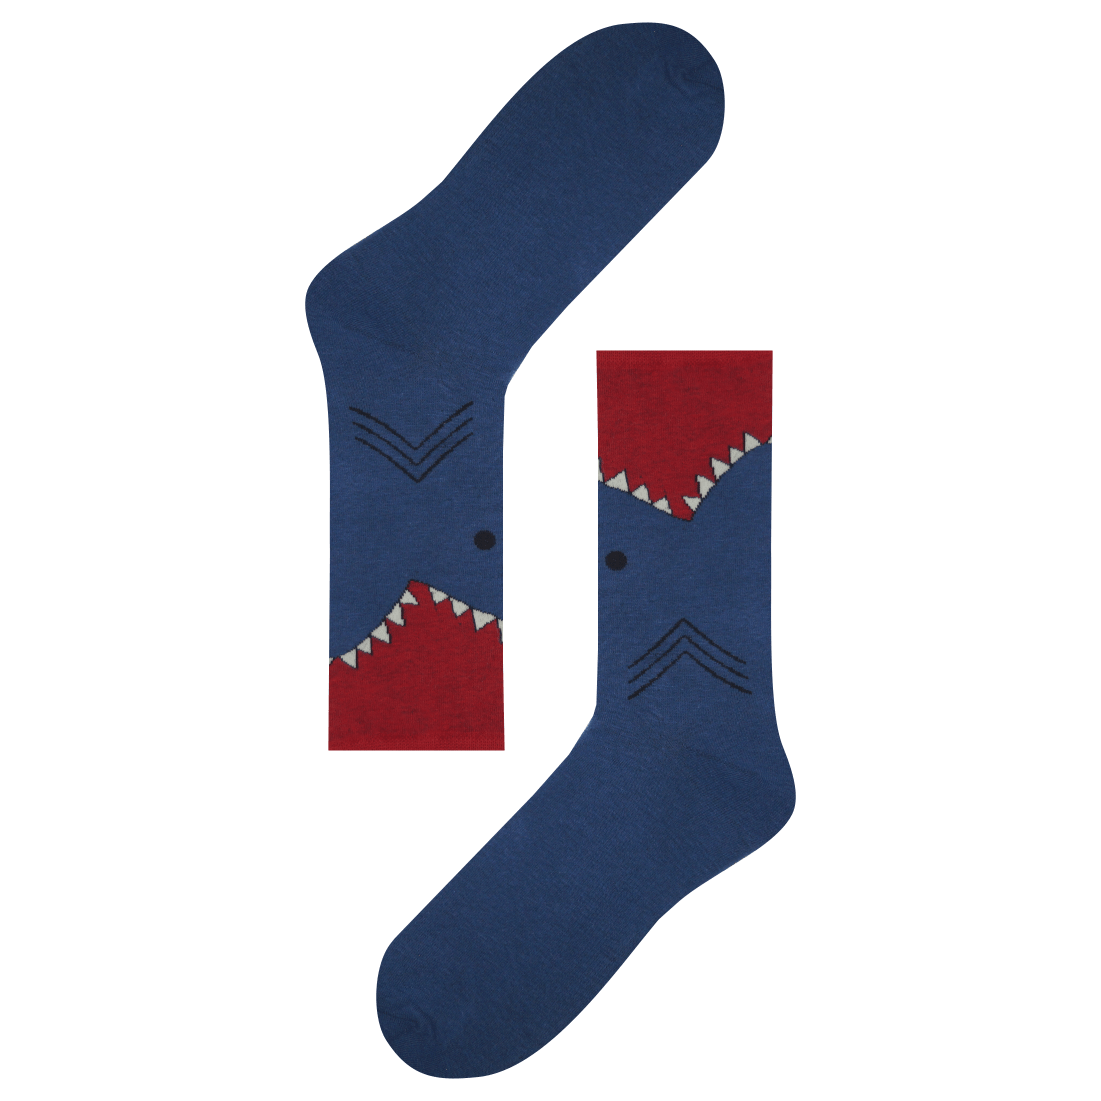 Medias locas calcetines de diseño mordida tiburon shark Freaky Socks